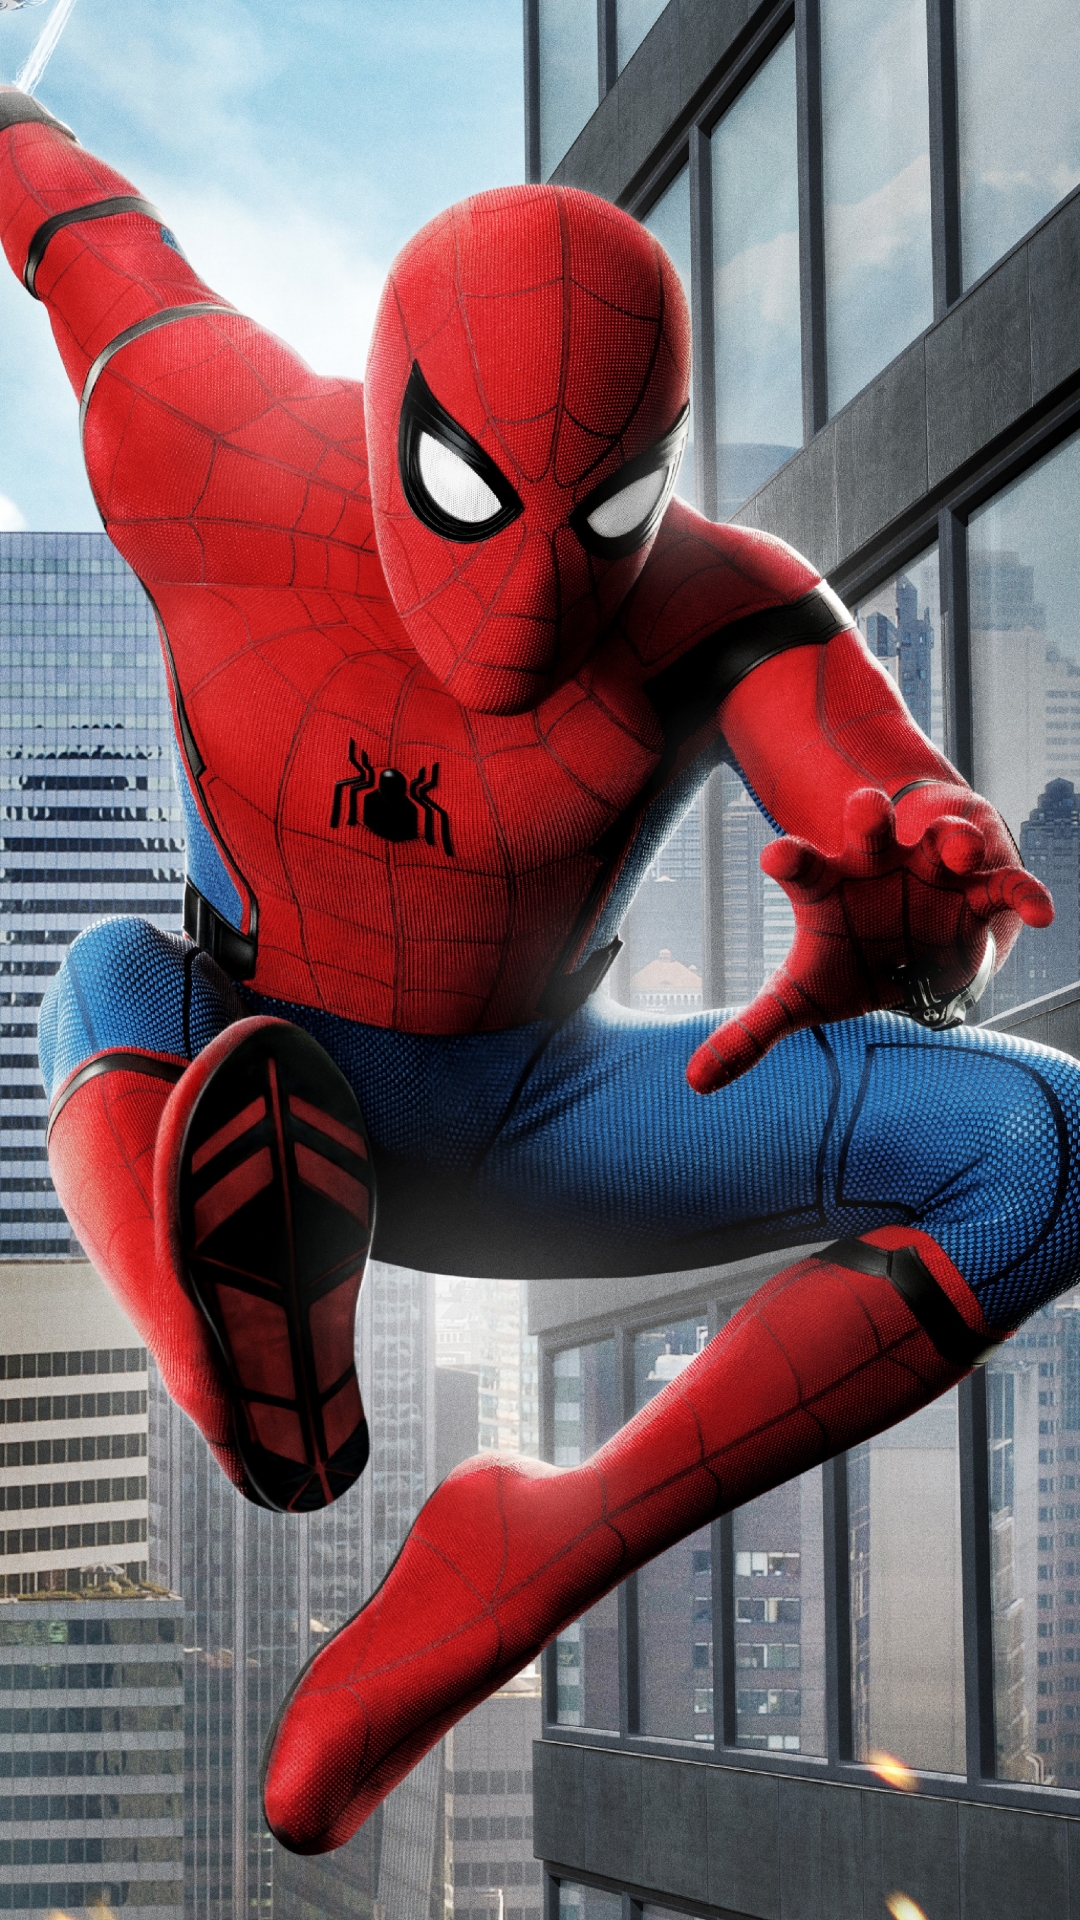 fond d'écran spiderman retour à la maison,homme araignée,super héros,personnage fictif,héros